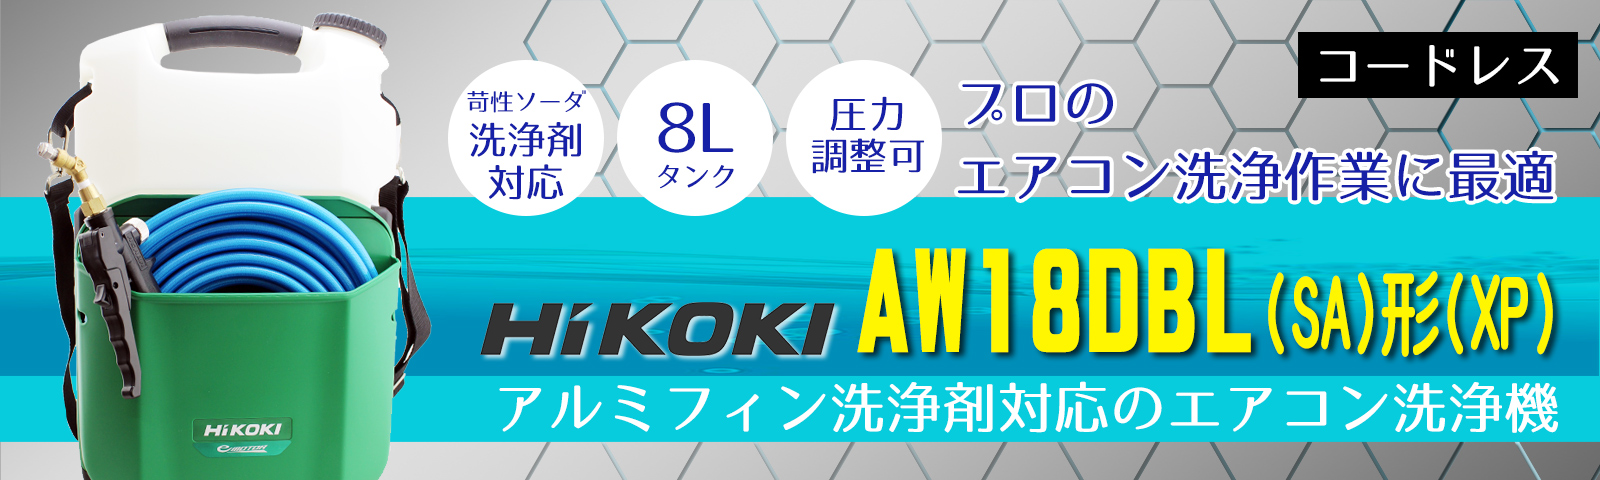 Hi KOKI(ハイコーキ) コードレス高圧洗浄機 AW18DBL(SA)形(XP) - エアコン洗浄作業に最適